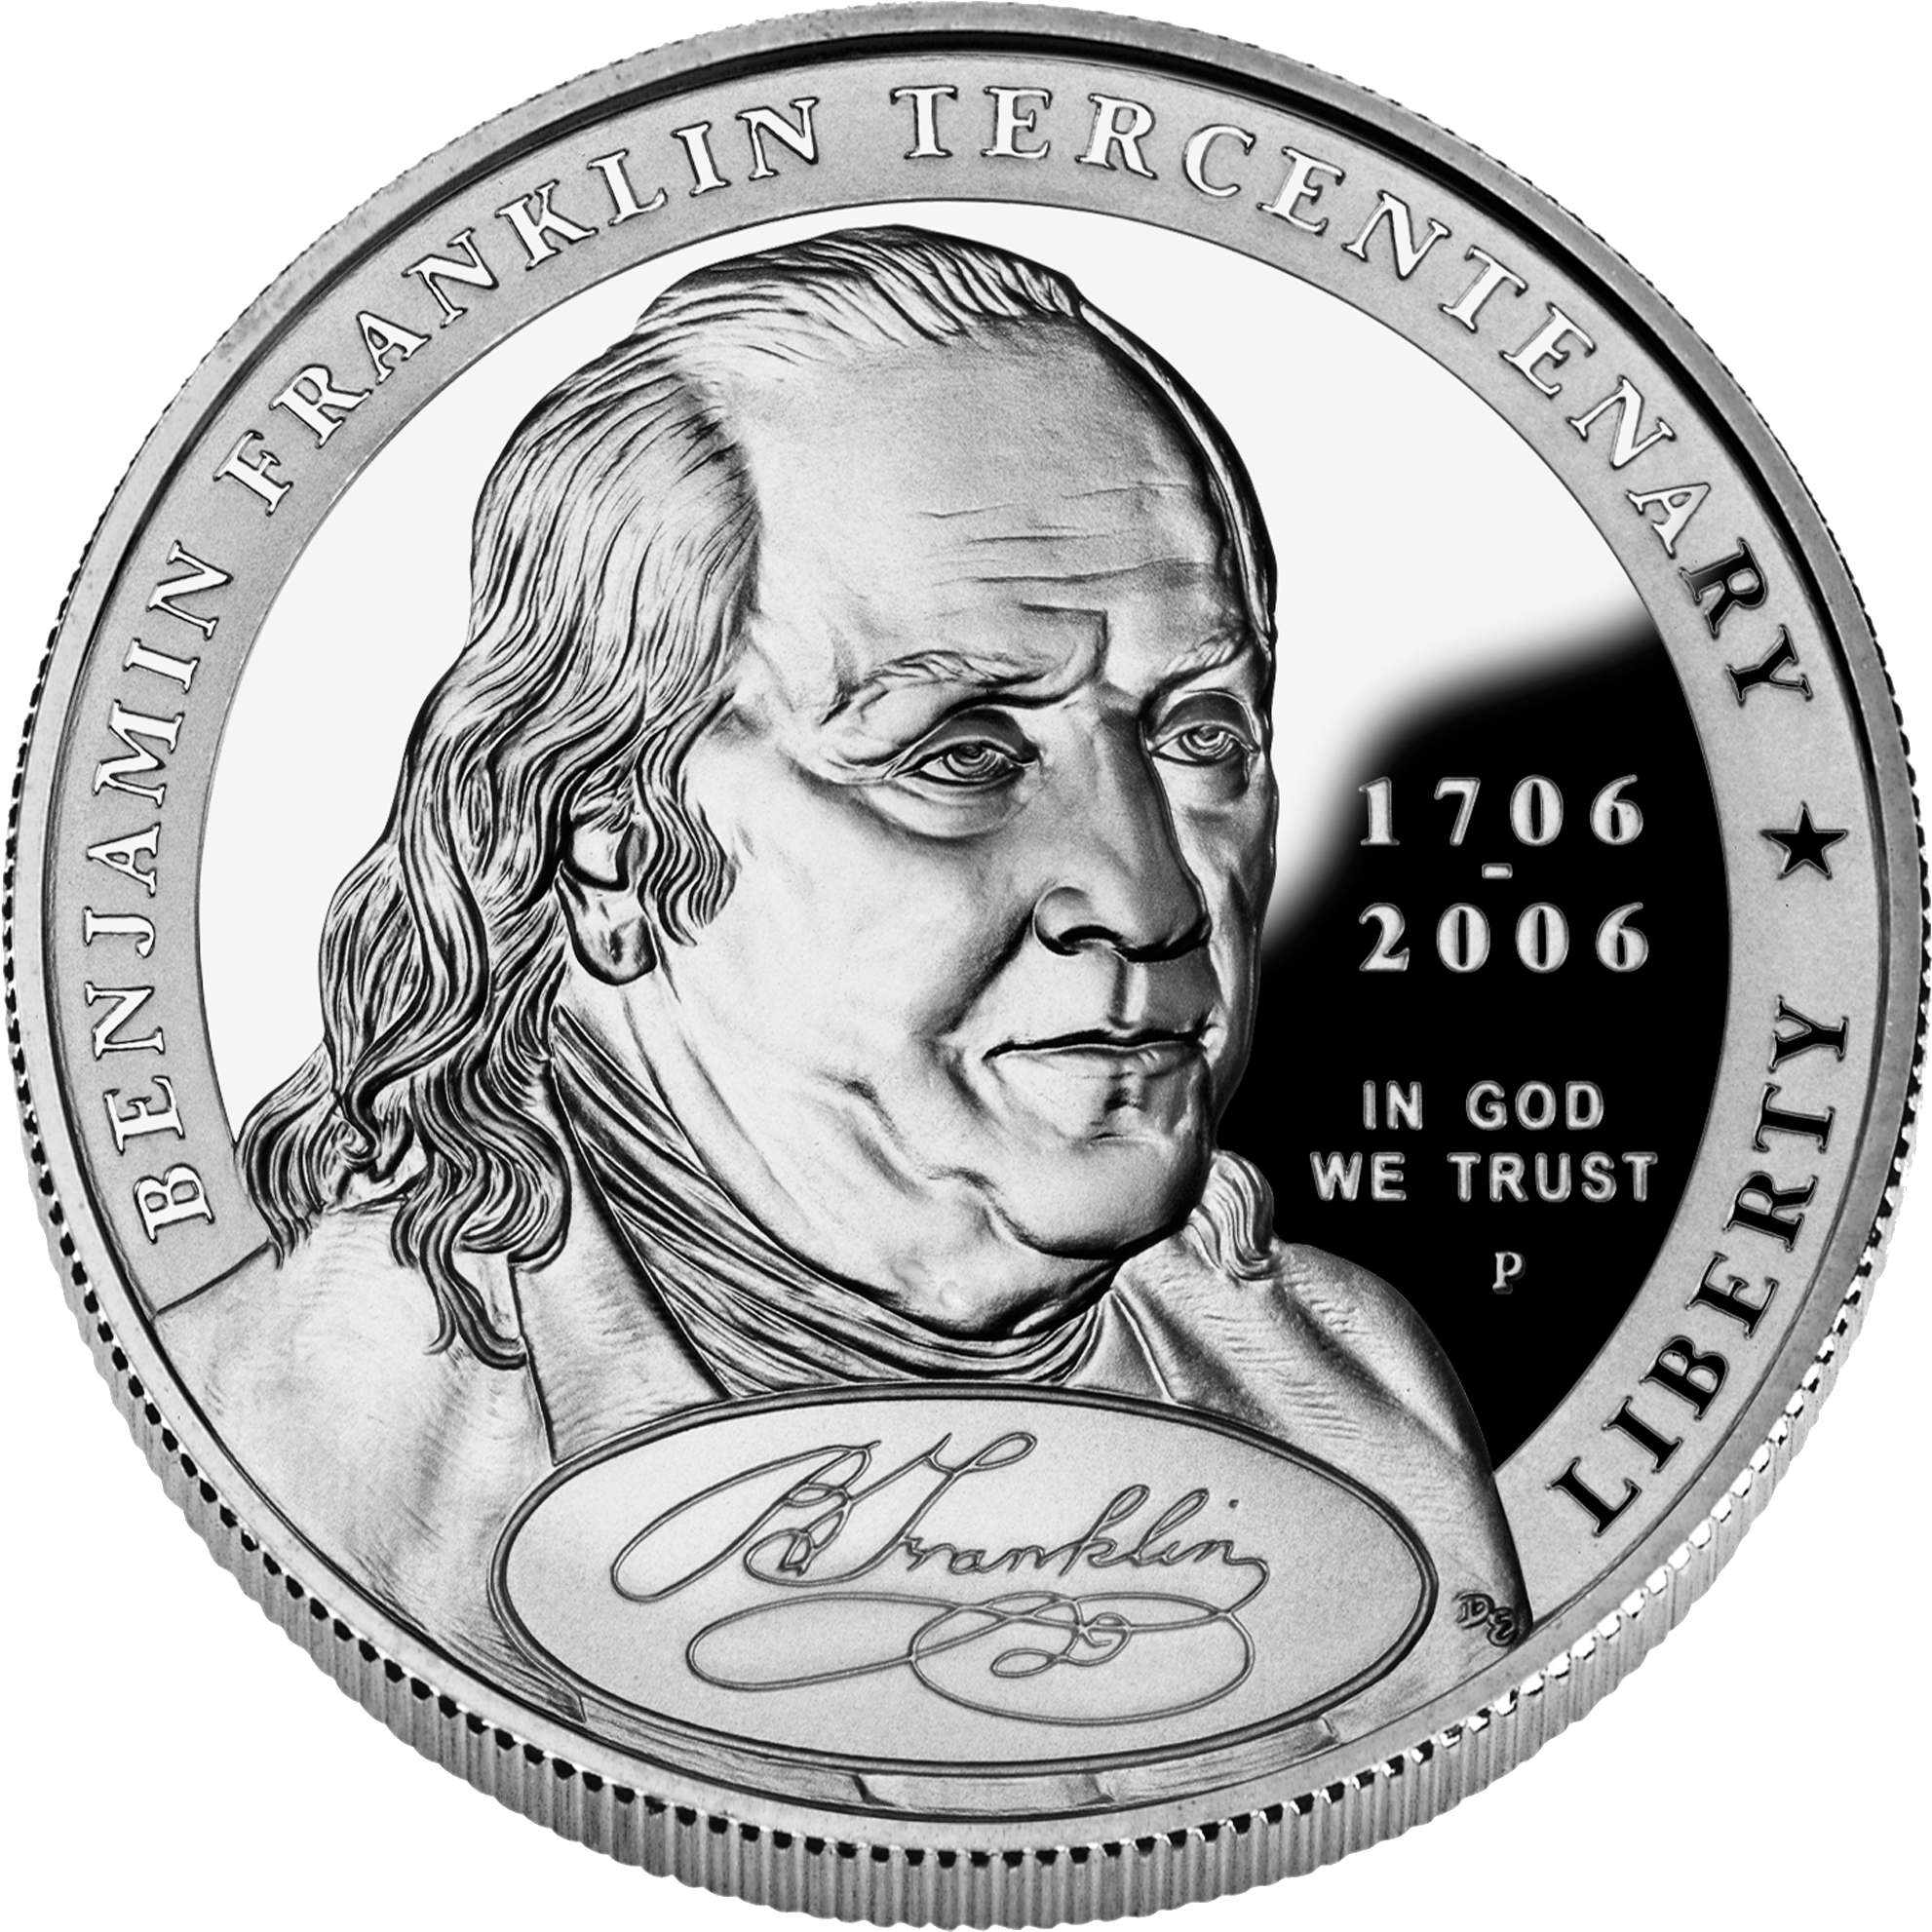 Benjamin Franklin Tercentenary Commemorative Coin